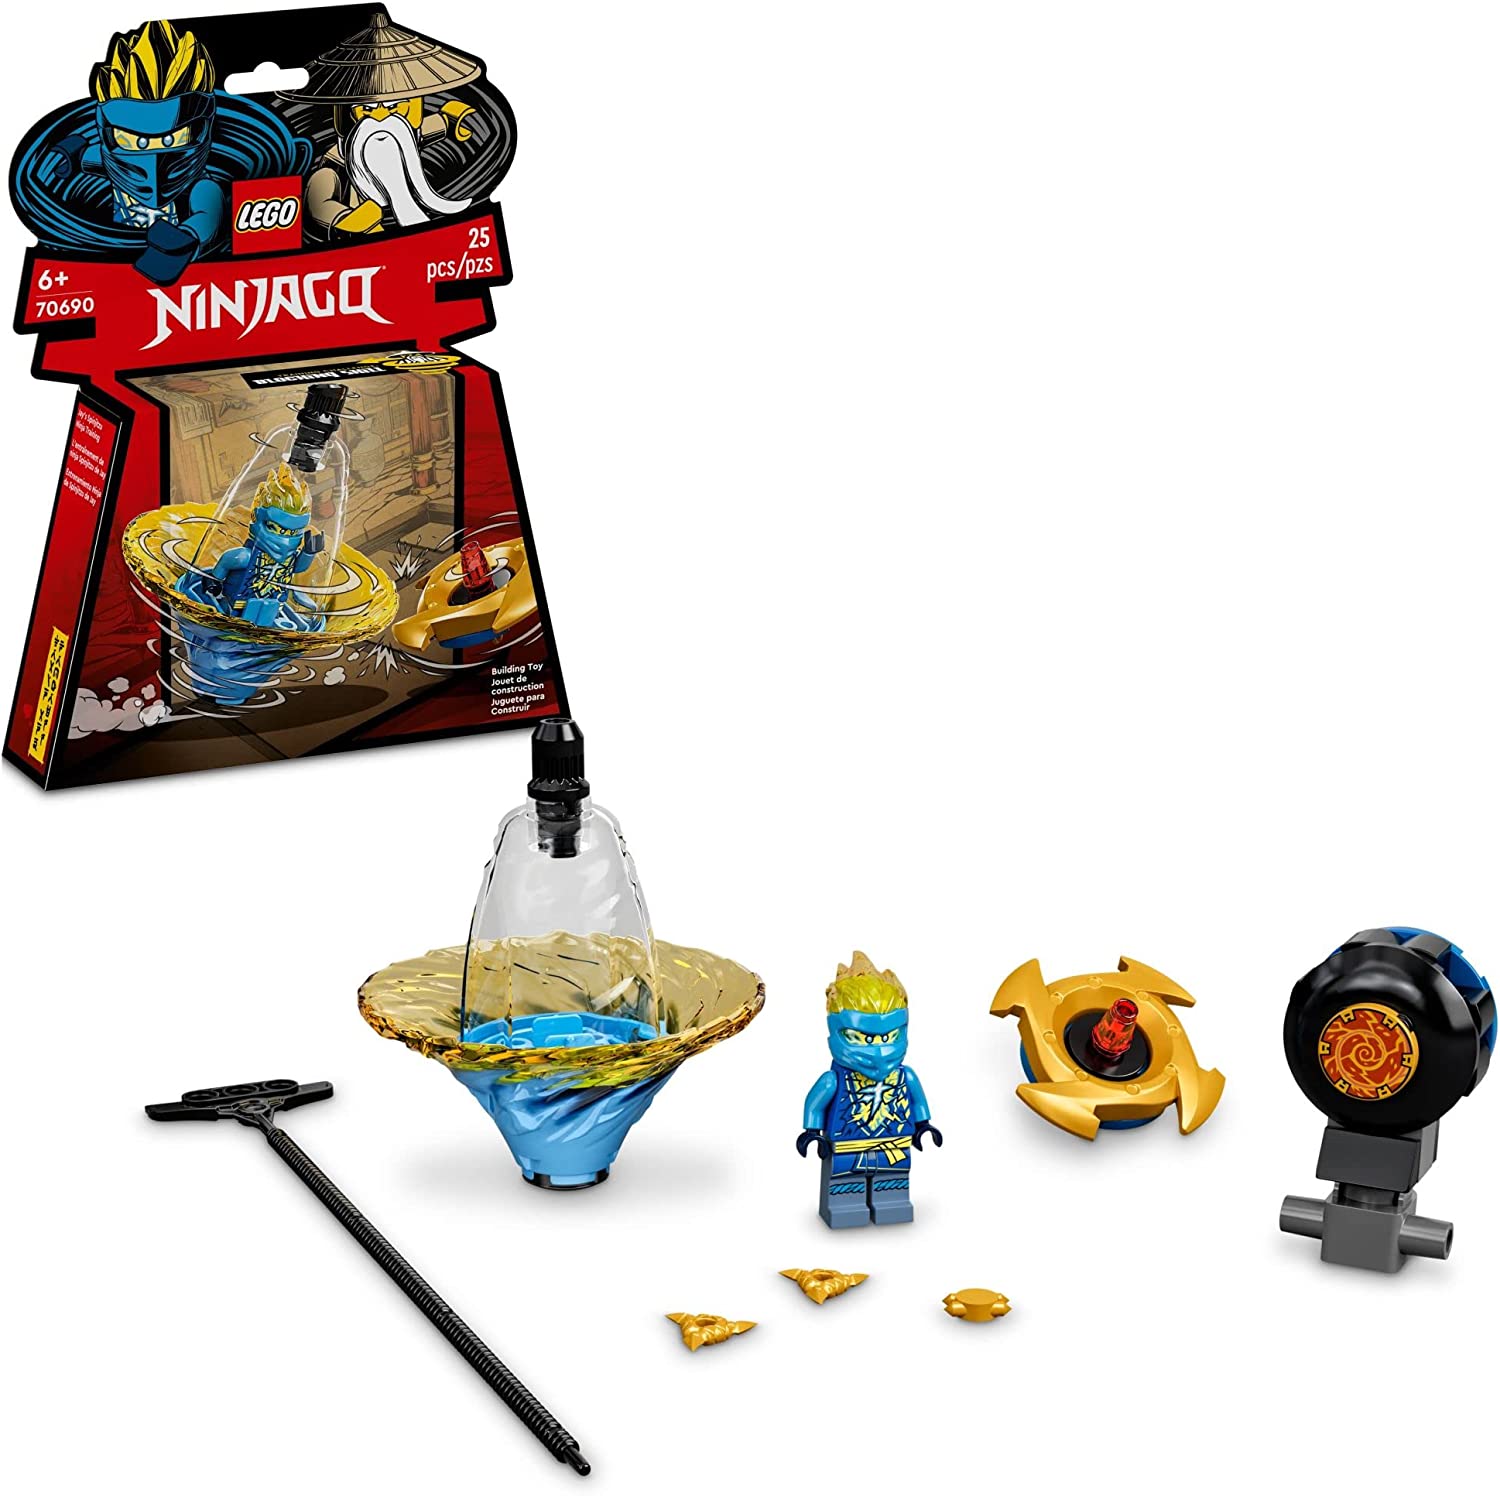 LEGO Ninjago: Jay’s Spinjitzu Ninja Training